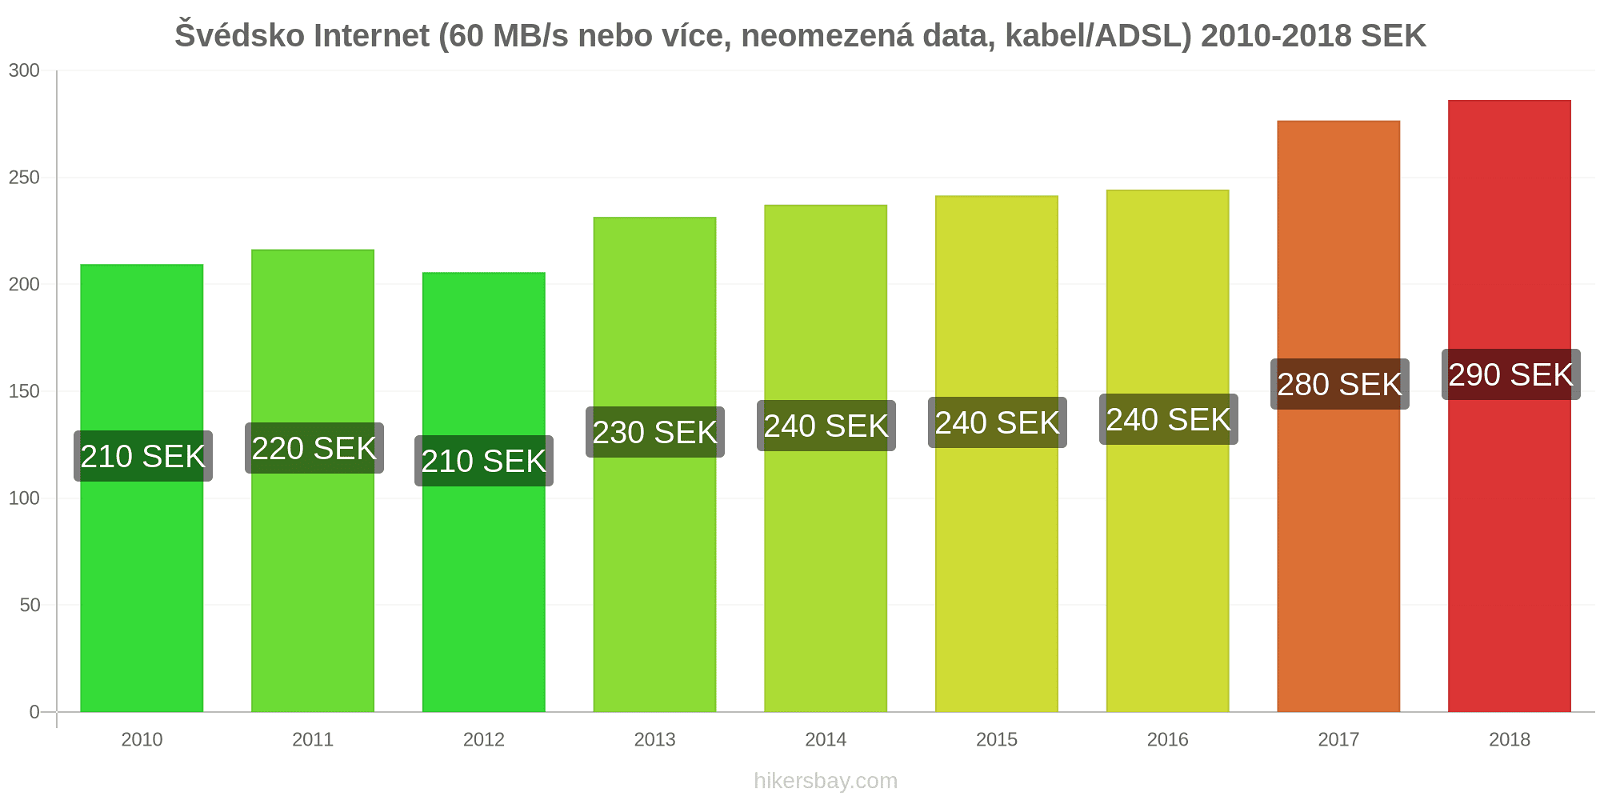 Švédsko změny cen Internet (60 Mbps nebo více, neomezená data, kabel/ADSL) hikersbay.com